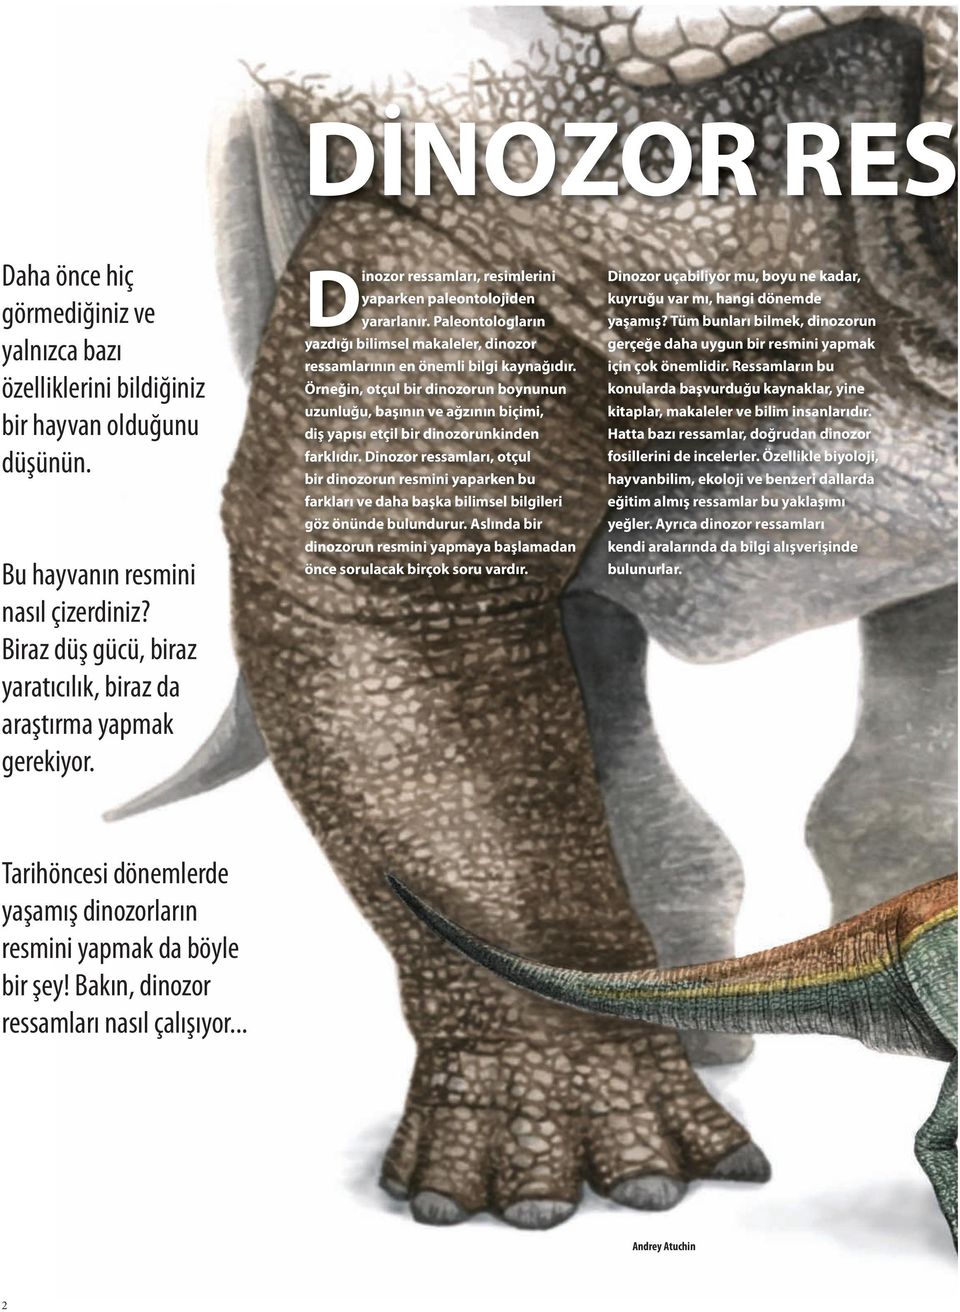 Paleontologların yazdığı bilimsel makaleler, dinozor ressamlarının en önemli bilgi kaynağıdır.